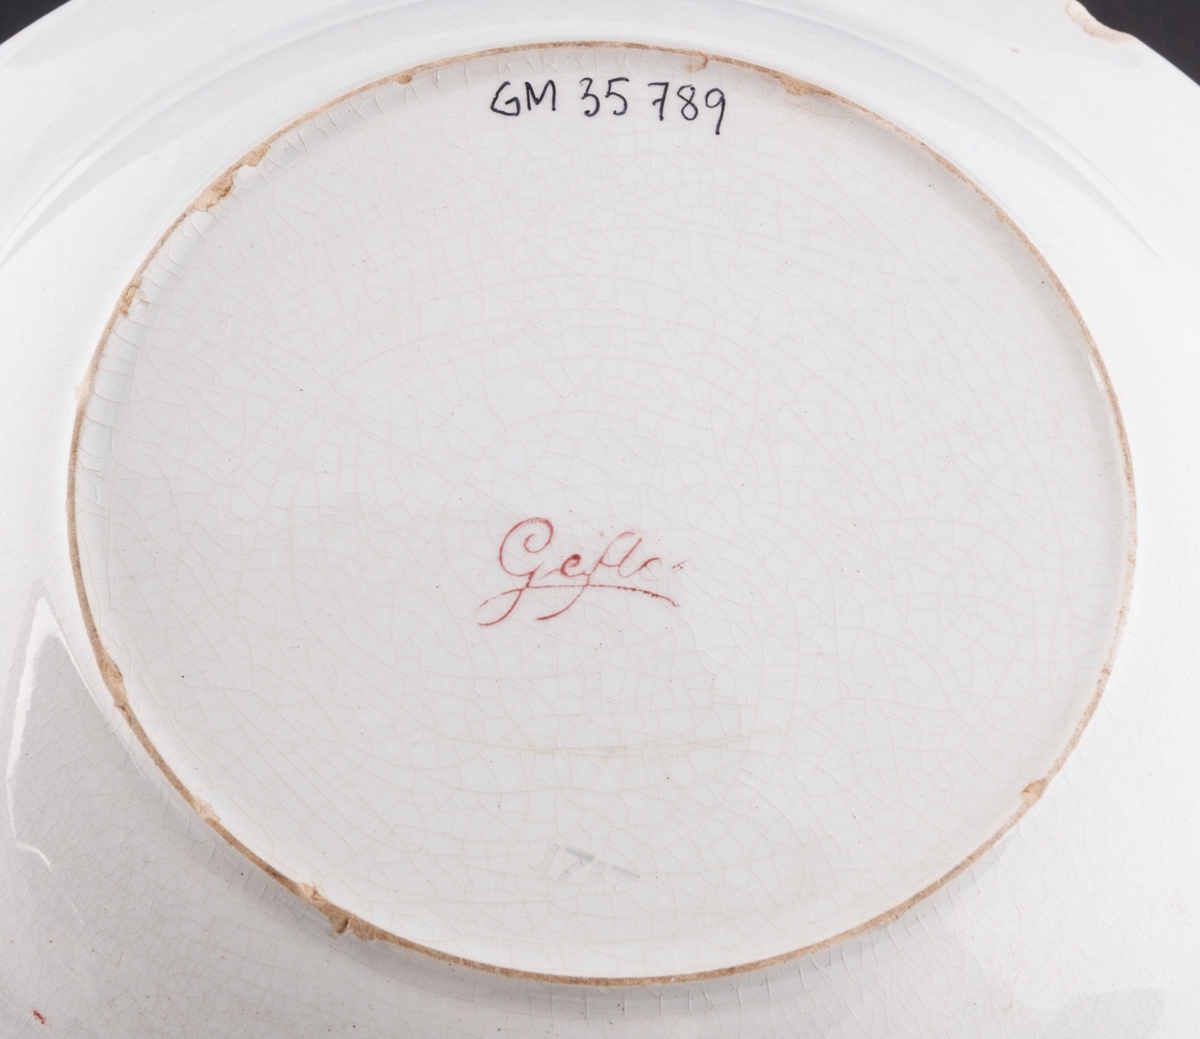 Djup mattallrik tillverkad vid Gefle Porslin AB på 1910-talet. Försedd med tryckt mönster, överföringsbilder i form av tomtemotiv på brämet. På undersidan stämplat "Gefle".